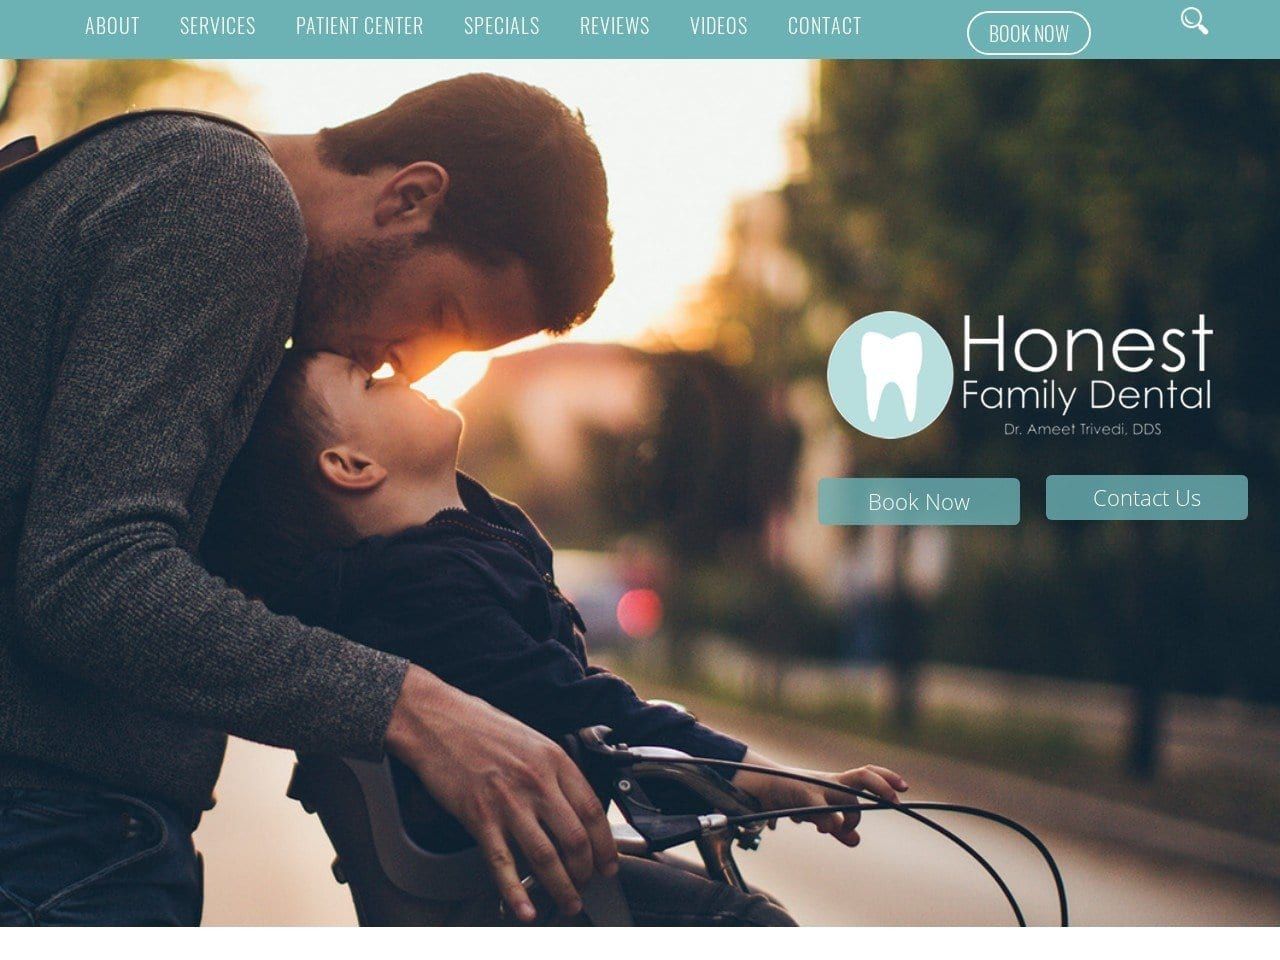 Honest Family Dental Website Screenshot from honestfamilydental.com